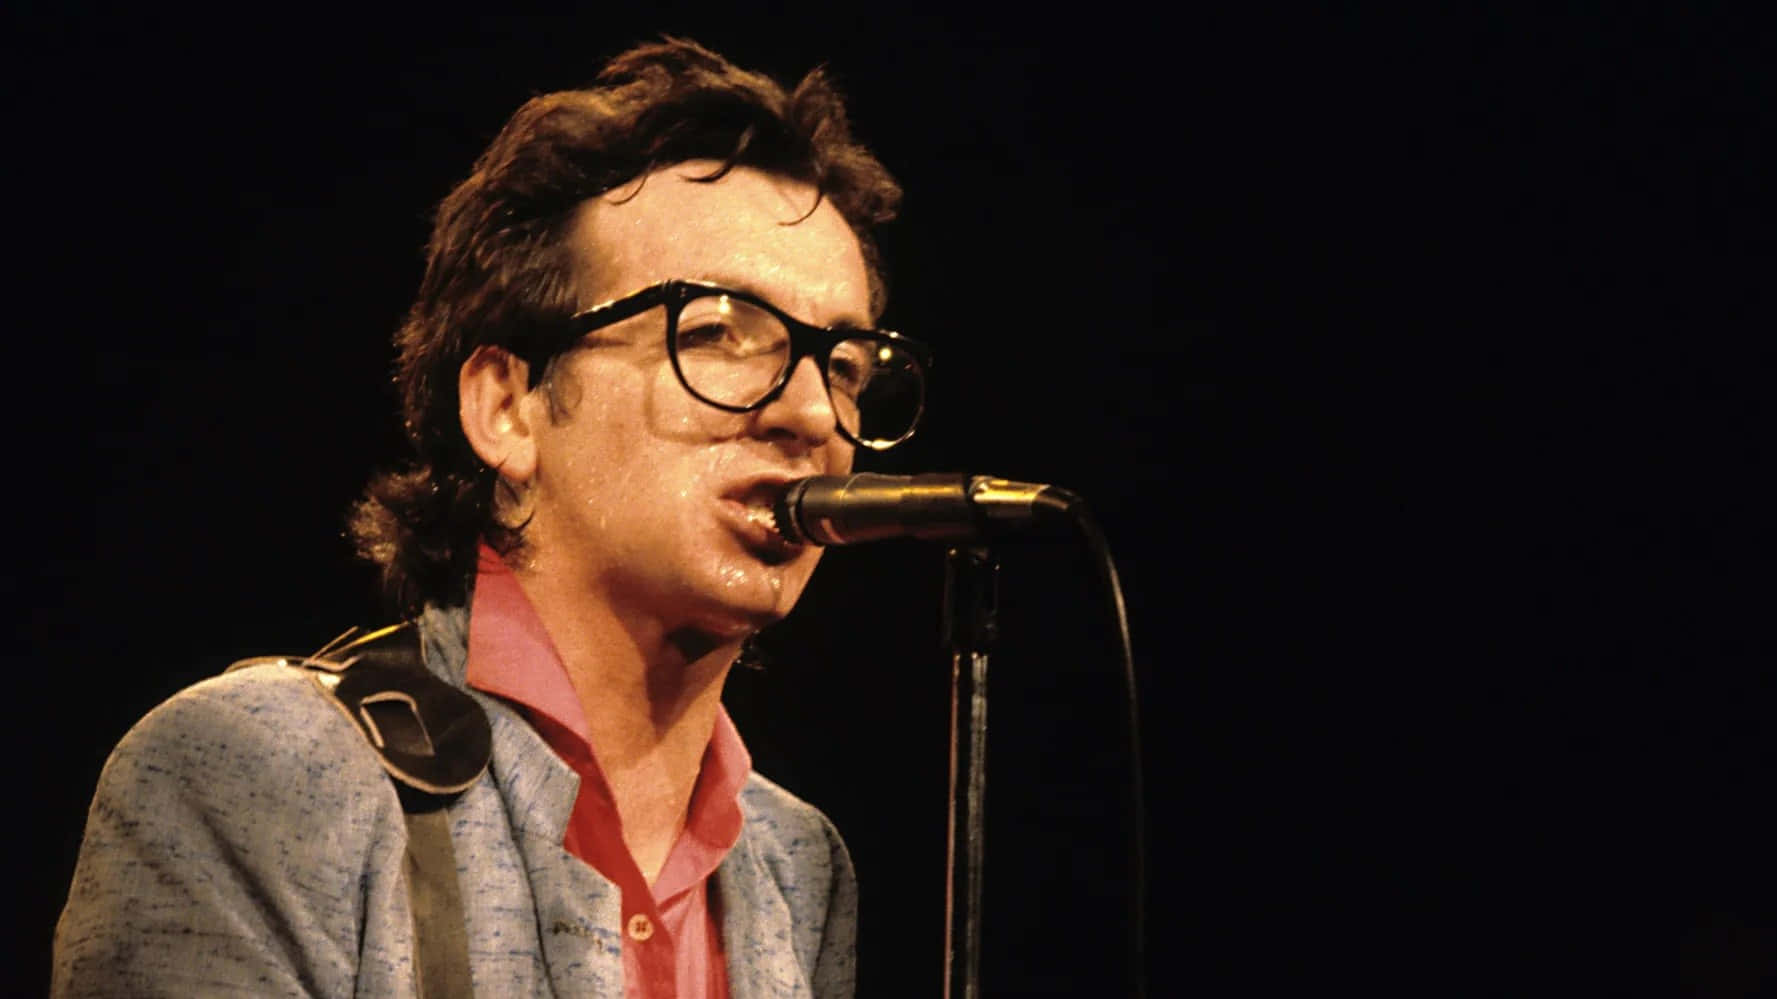 Elvis Costello Vintage 1979 Tapetet er inspireret af en gylden æra i britisk punk og new wave musik. Det har klassiske sort-hvide fotografier og blegne kulørde vektor grafik, designet til at bringe dit computer eller mobil skærm til live. Wallpaper